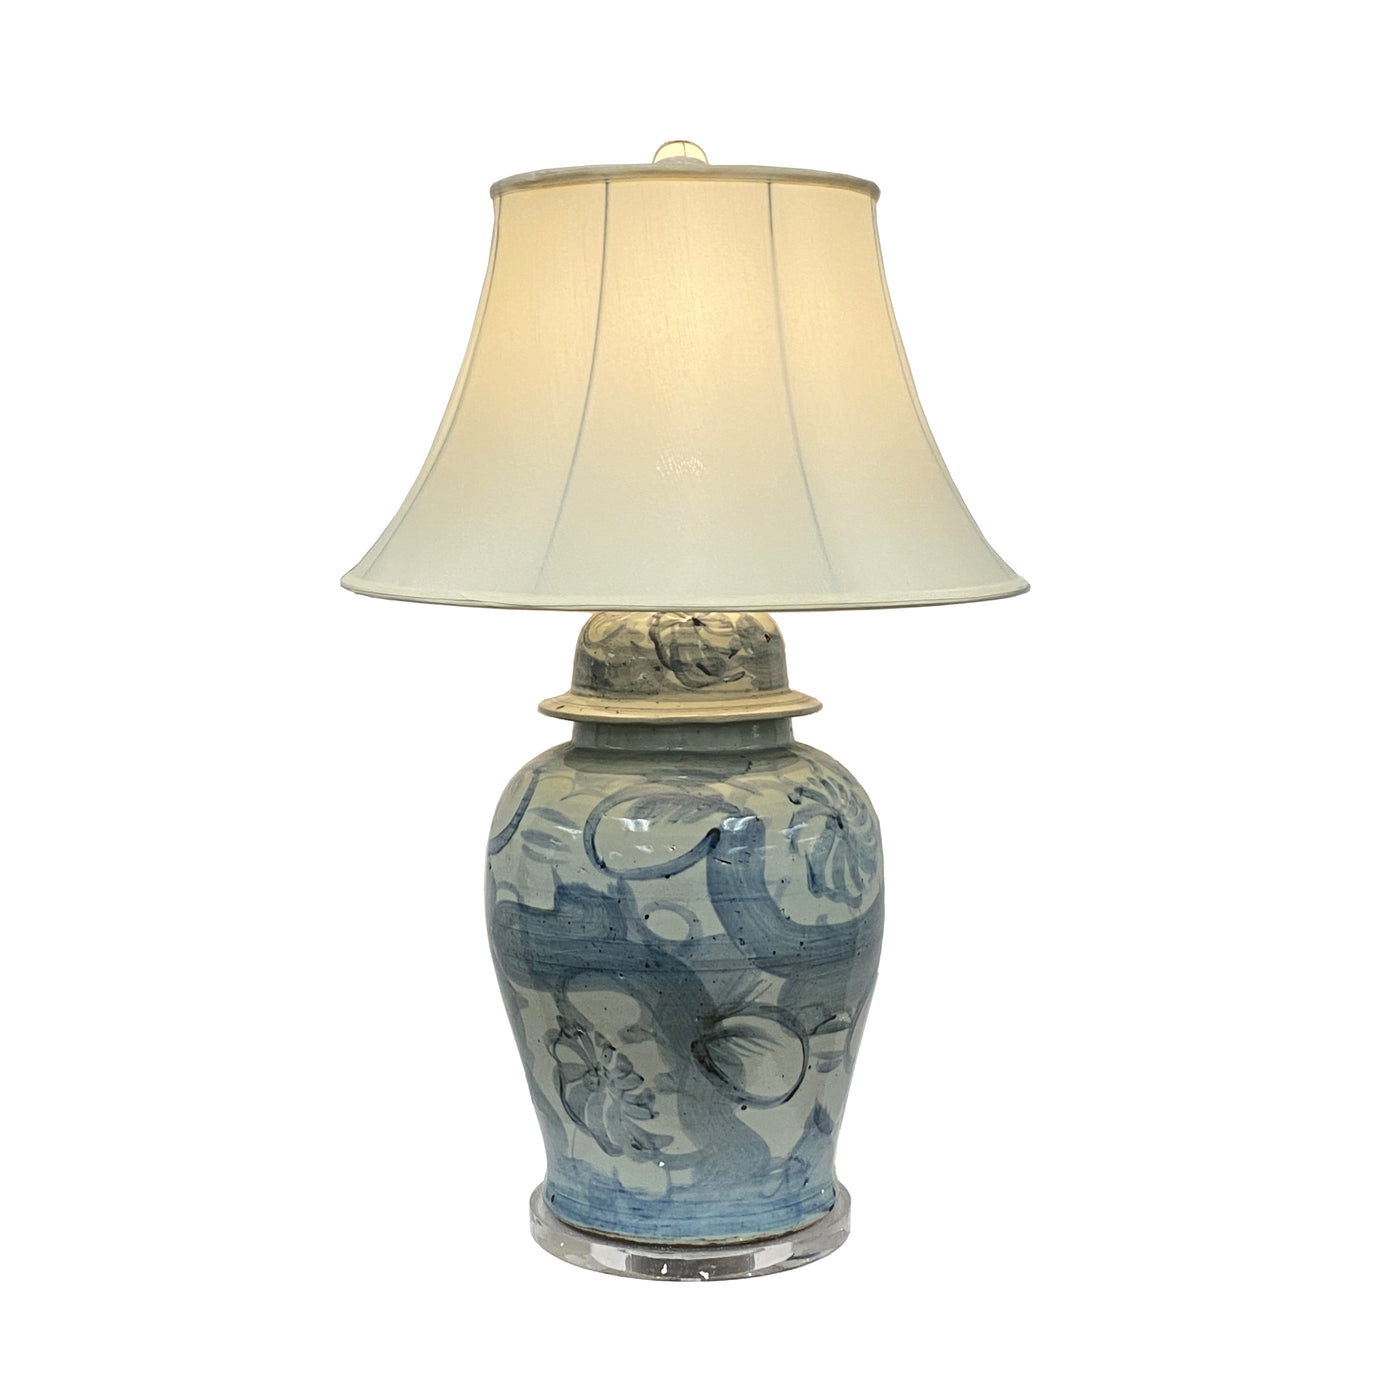 Classic Ceramic Lamp